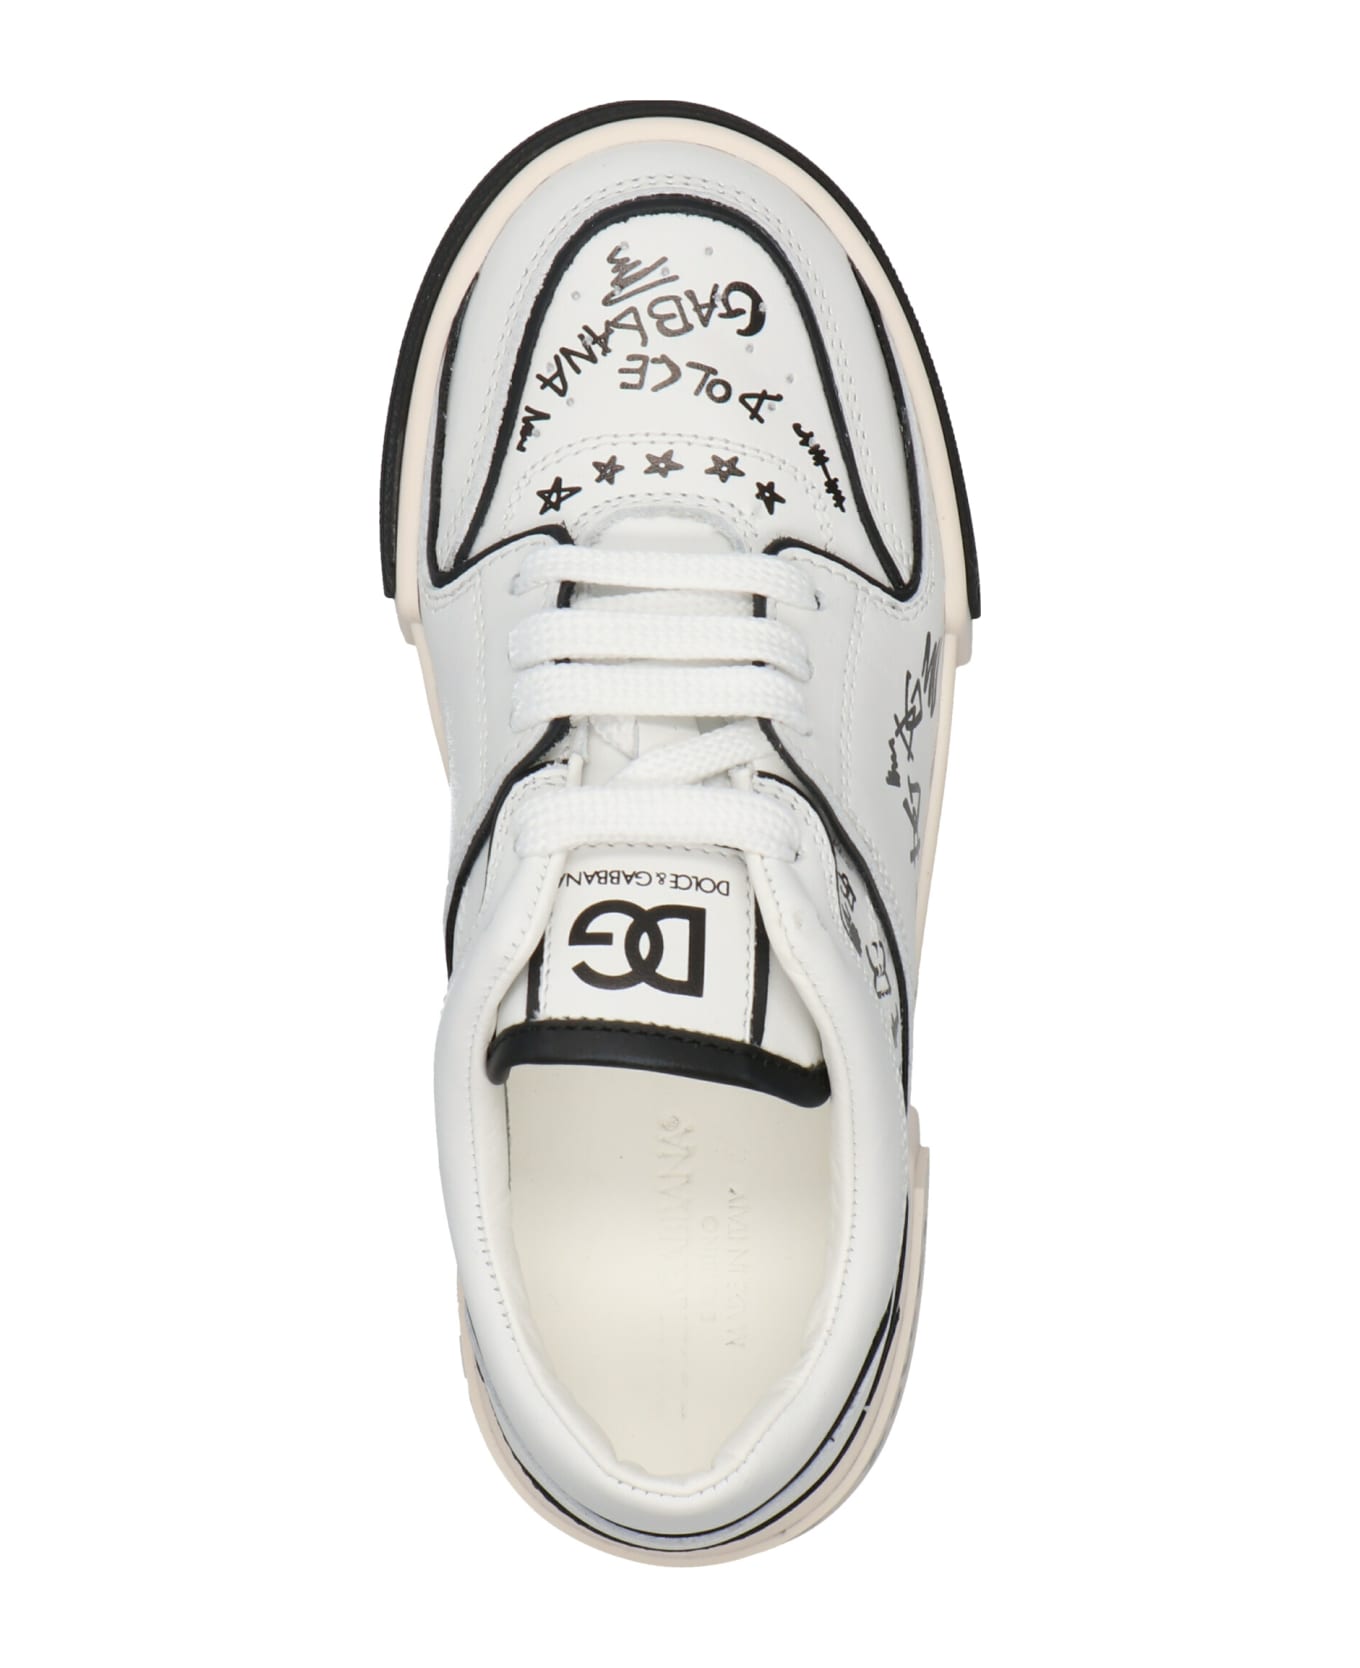 Dolce & Gabbana Logo Print Sneakers - White/Black